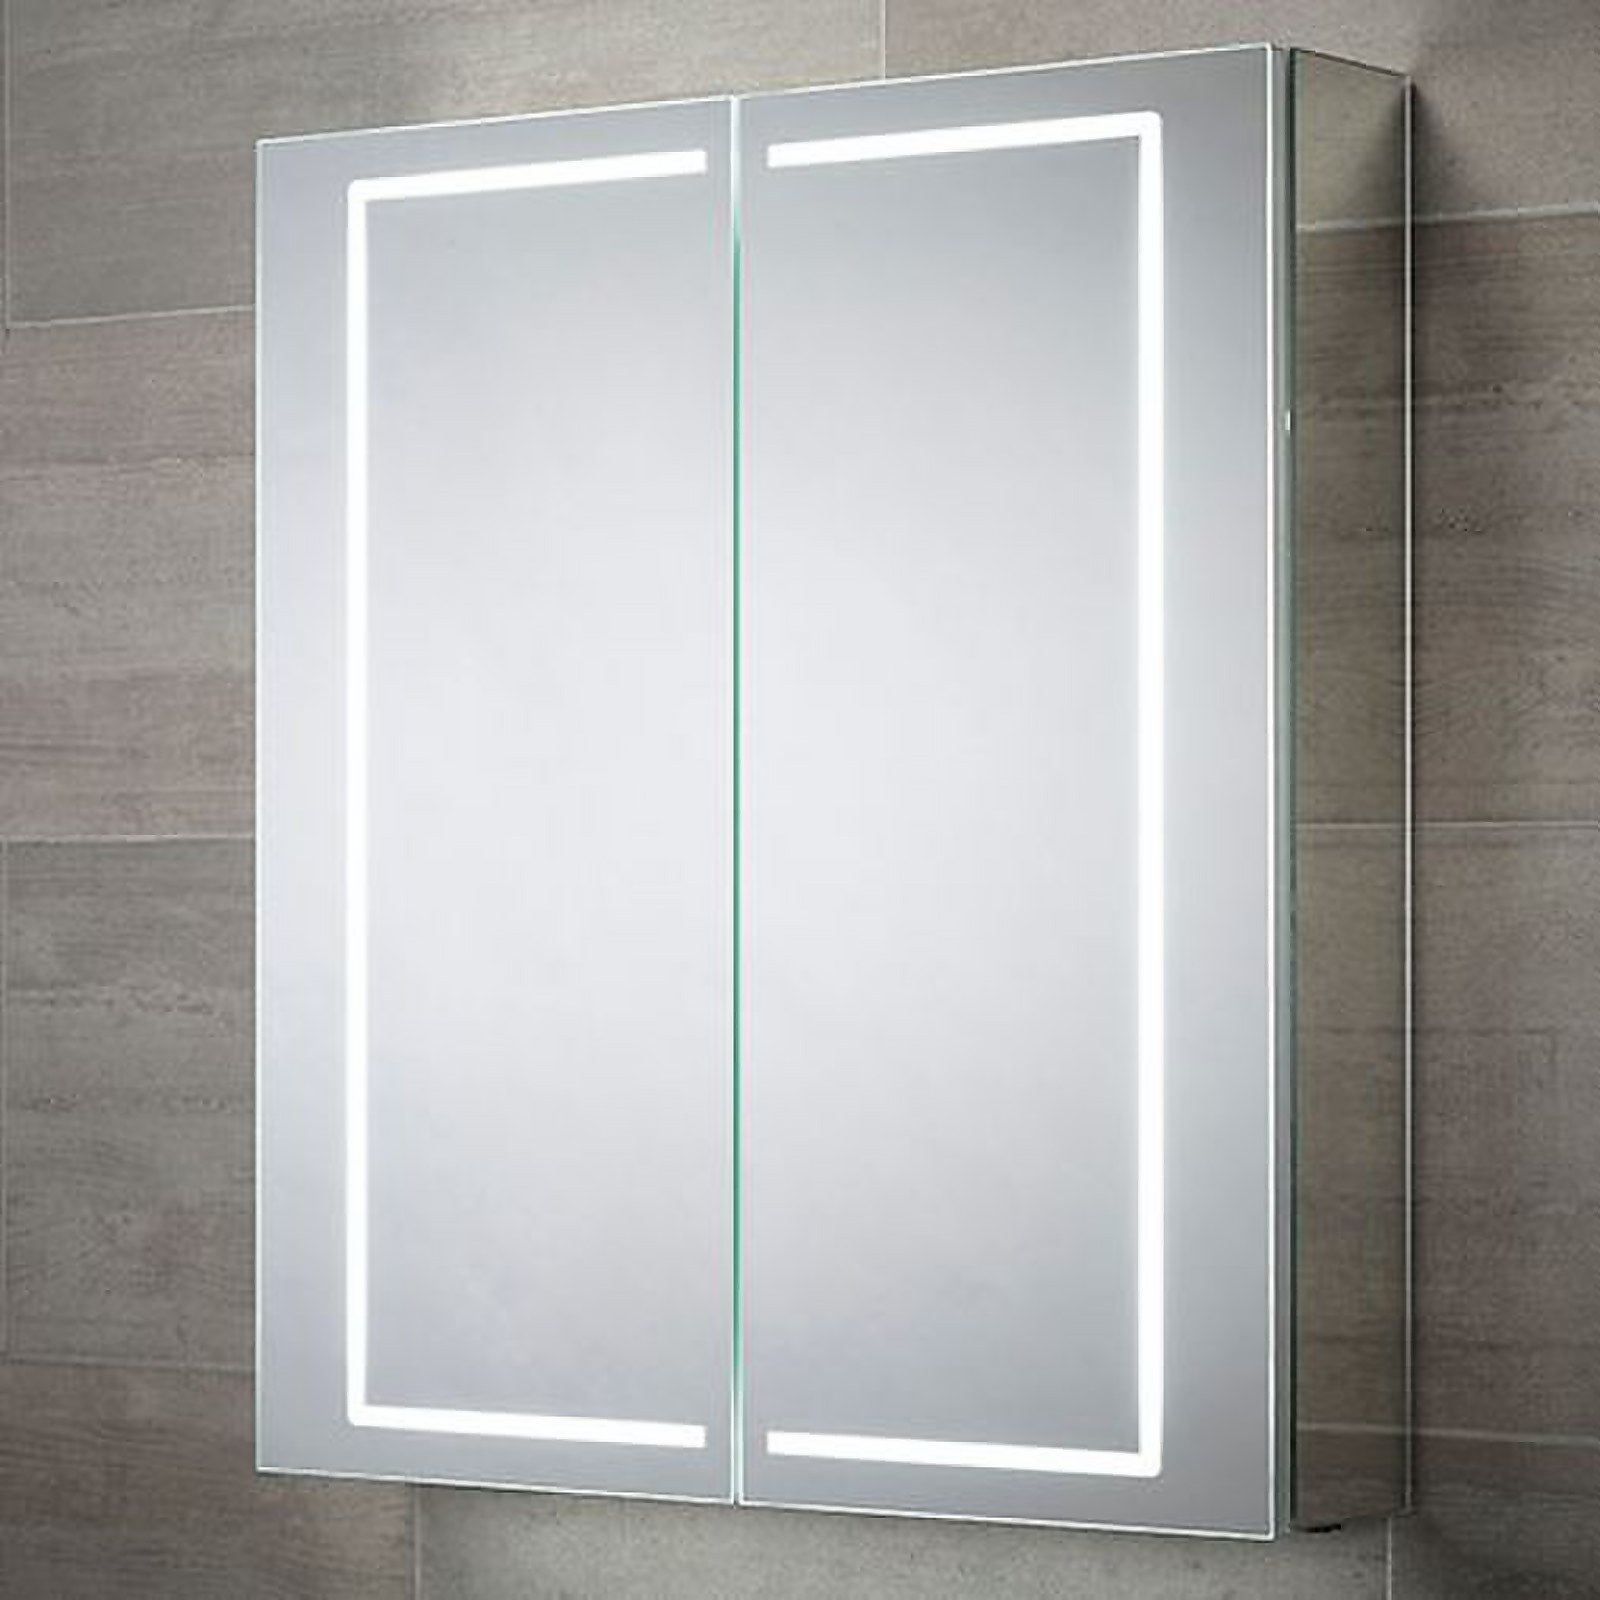 Photo of Bathstore Castor Double Door Led Mirror Cabinet